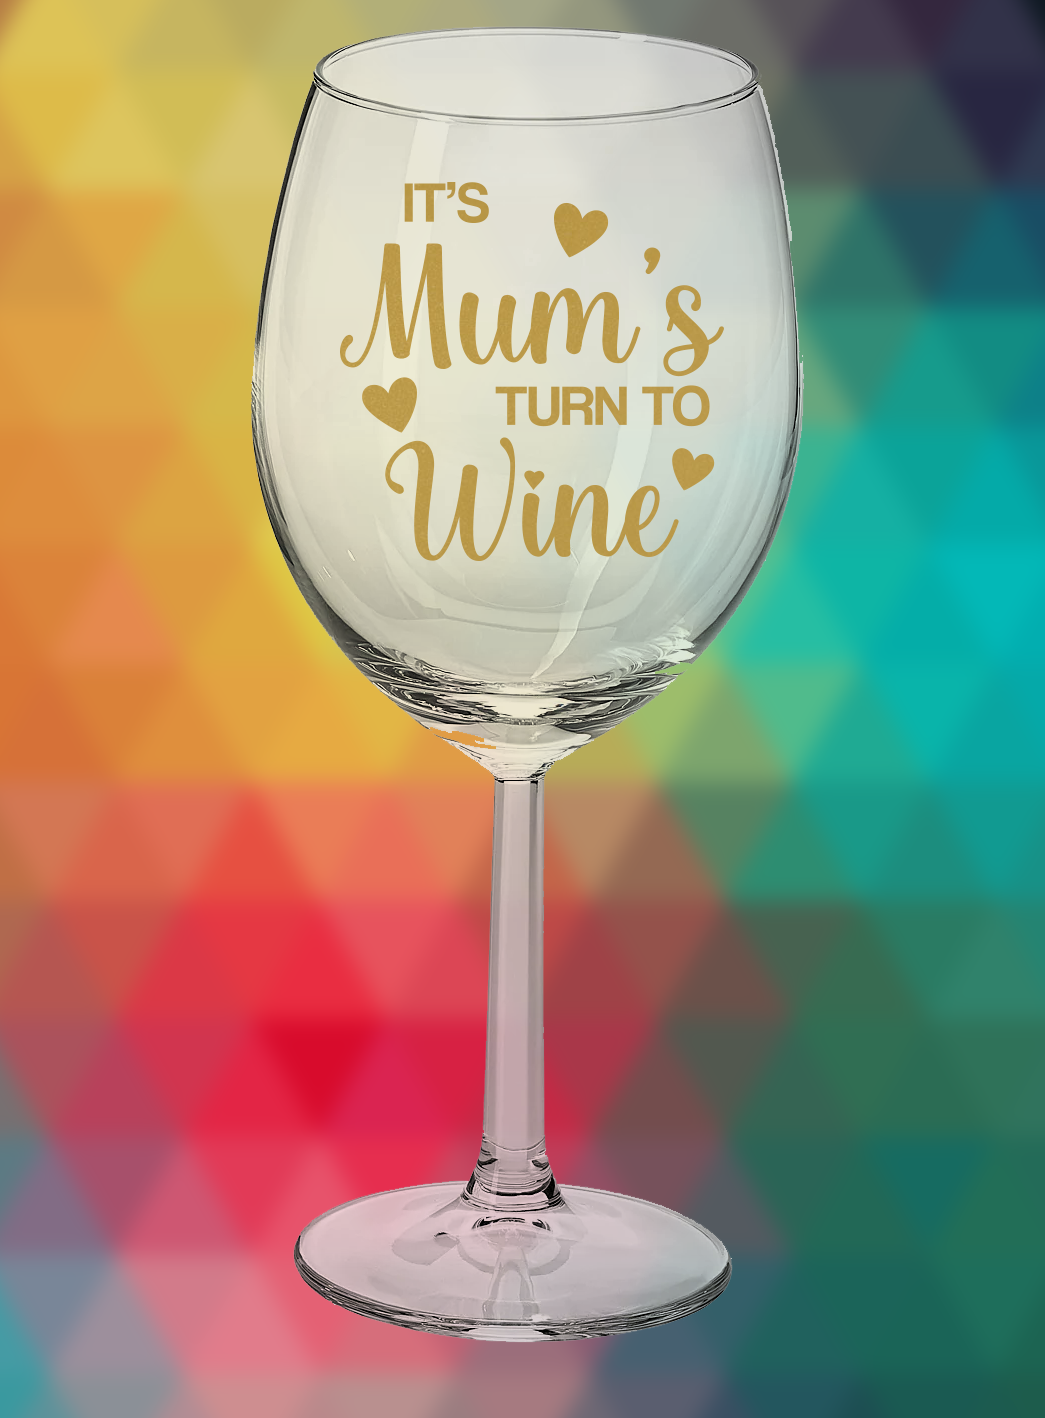 Copa de vino: el turno de mamá hacia el vino